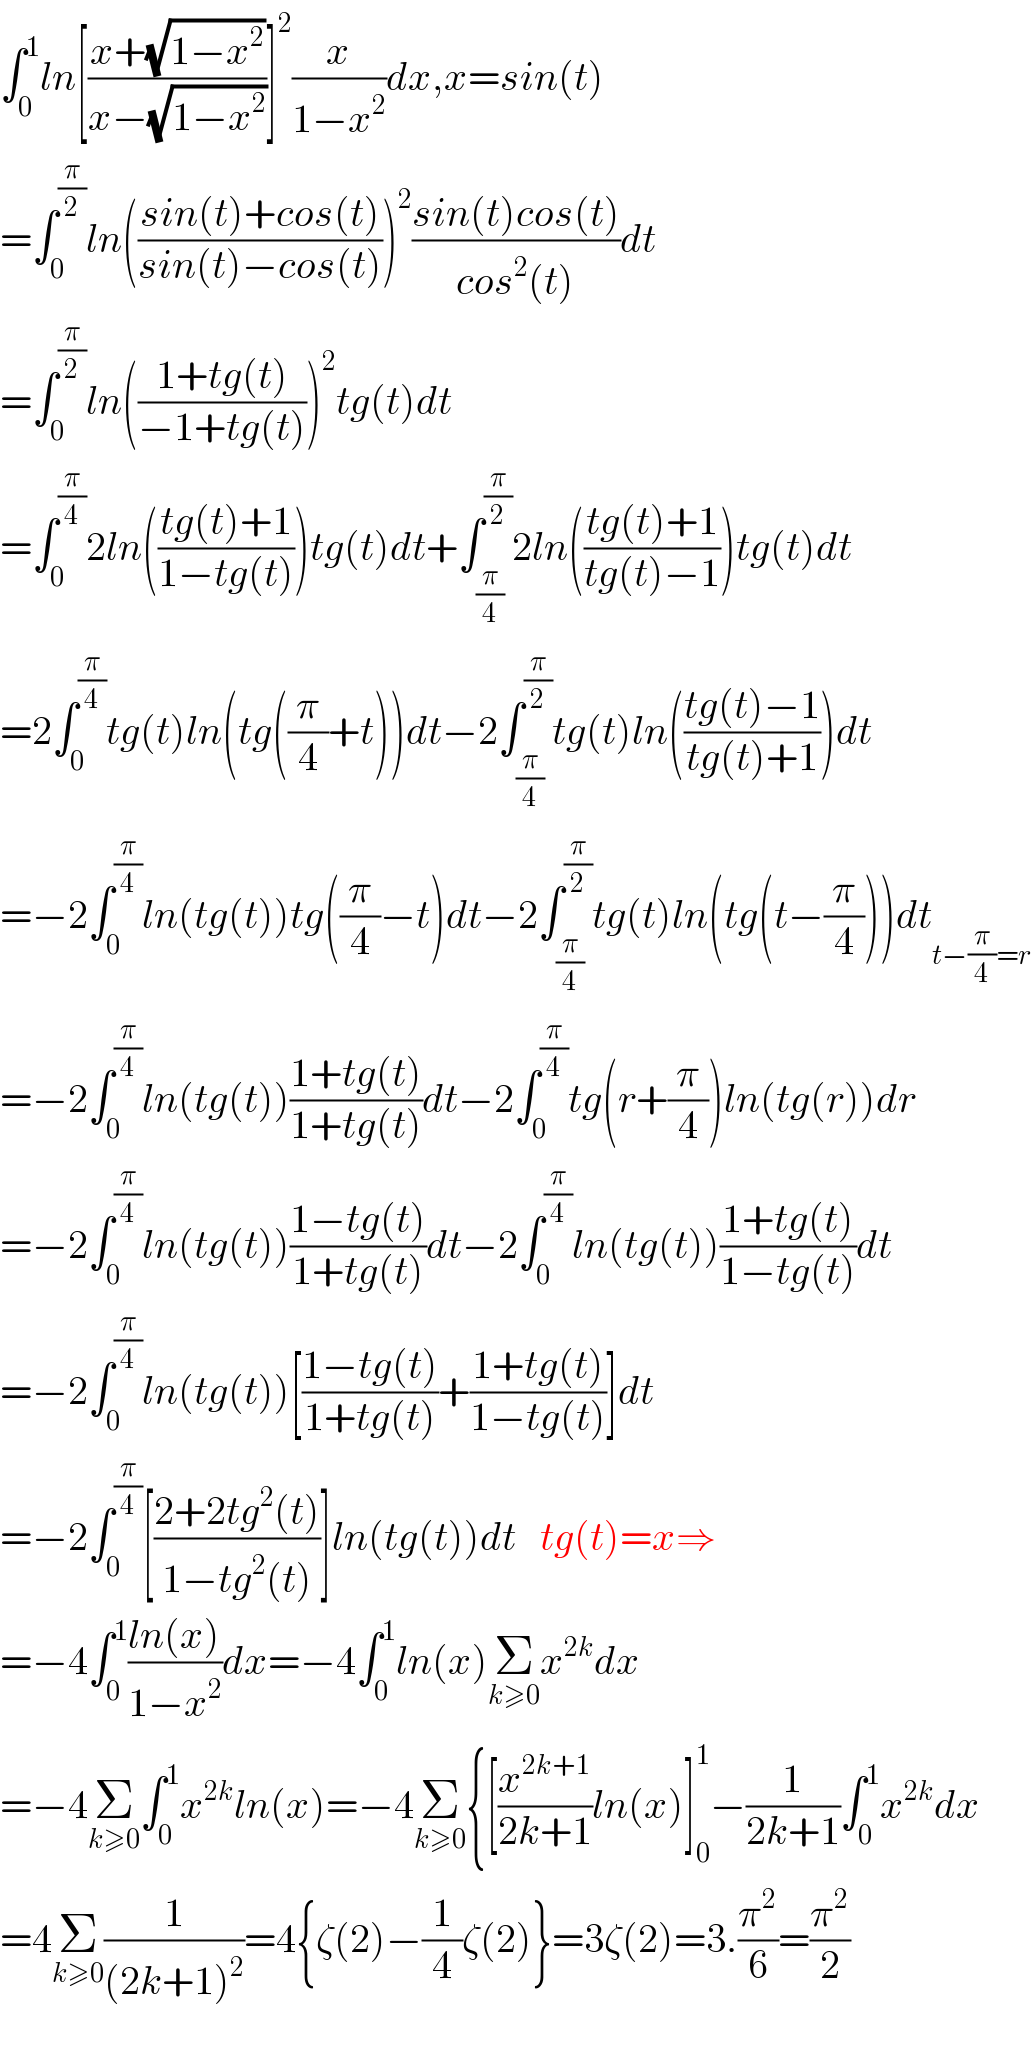 ∫_0 ^1 ln[((x+(√(1−x^2 )))/(x−(√(1−x^2 ))))]^2 (x/(1−x^2 ))dx,x=sin(t)  =∫_0 ^(π/2) ln(((sin(t)+cos(t))/(sin(t)−cos(t))))^2 ((sin(t)cos(t))/(cos^2 (t)))dt  =∫_0 ^(π/2) ln(((1+tg(t))/(−1+tg(t))))^2 tg(t)dt  =∫_0 ^(π/4) 2ln(((tg(t)+1)/(1−tg(t))))tg(t)dt+∫_(π/4) ^(π/2) 2ln(((tg(t)+1)/(tg(t)−1)))tg(t)dt  =2∫_0 ^(π/4) tg(t)ln(tg((π/4)+t))dt−2∫_(π/4) ^(π/2) tg(t)ln(((tg(t)−1)/(tg(t)+1)))dt  =−2∫_0 ^(π/4) ln(tg(t))tg((π/4)−t)dt−2∫_(π/4) ^(π/2) tg(t)ln(tg(t−(π/4)))dt_(t−(π/4)=r)   =−2∫_0 ^(π/4) ln(tg(t))((1+tg(t))/(1+tg(t)))dt−2∫_0 ^(π/4) tg(r+(π/4))ln(tg(r))dr  =−2∫_0 ^(π/4) ln(tg(t))((1−tg(t))/(1+tg(t)))dt−2∫_0 ^(π/4) ln(tg(t))((1+tg(t))/(1−tg(t)))dt  =−2∫_0 ^(π/4) ln(tg(t))[((1−tg(t))/(1+tg(t)))+((1+tg(t))/(1−tg(t)))]dt  =−2∫_0 ^(π/4) [((2+2tg^2 (t))/(1−tg^2 (t)))]ln(tg(t))dt   tg(t)=x⇒  =−4∫_0 ^1 ((ln(x))/(1−x^2 ))dx=−4∫_0 ^1 ln(x)Σ_(k≥0) x^(2k) dx  =−4Σ_(k≥0) ∫_0 ^1 x^(2k) ln(x)=−4Σ_(k≥0) {[(x^(2k+1) /(2k+1))ln(x)]_0 ^1 −(1/(2k+1))∫_0 ^1 x^(2k) dx  =4Σ_(k≥0) (1/((2k+1)^2 ))=4{ζ(2)−(1/4)ζ(2)}=3ζ(2)=3.(π^2 /6)=(π^2 /2)    